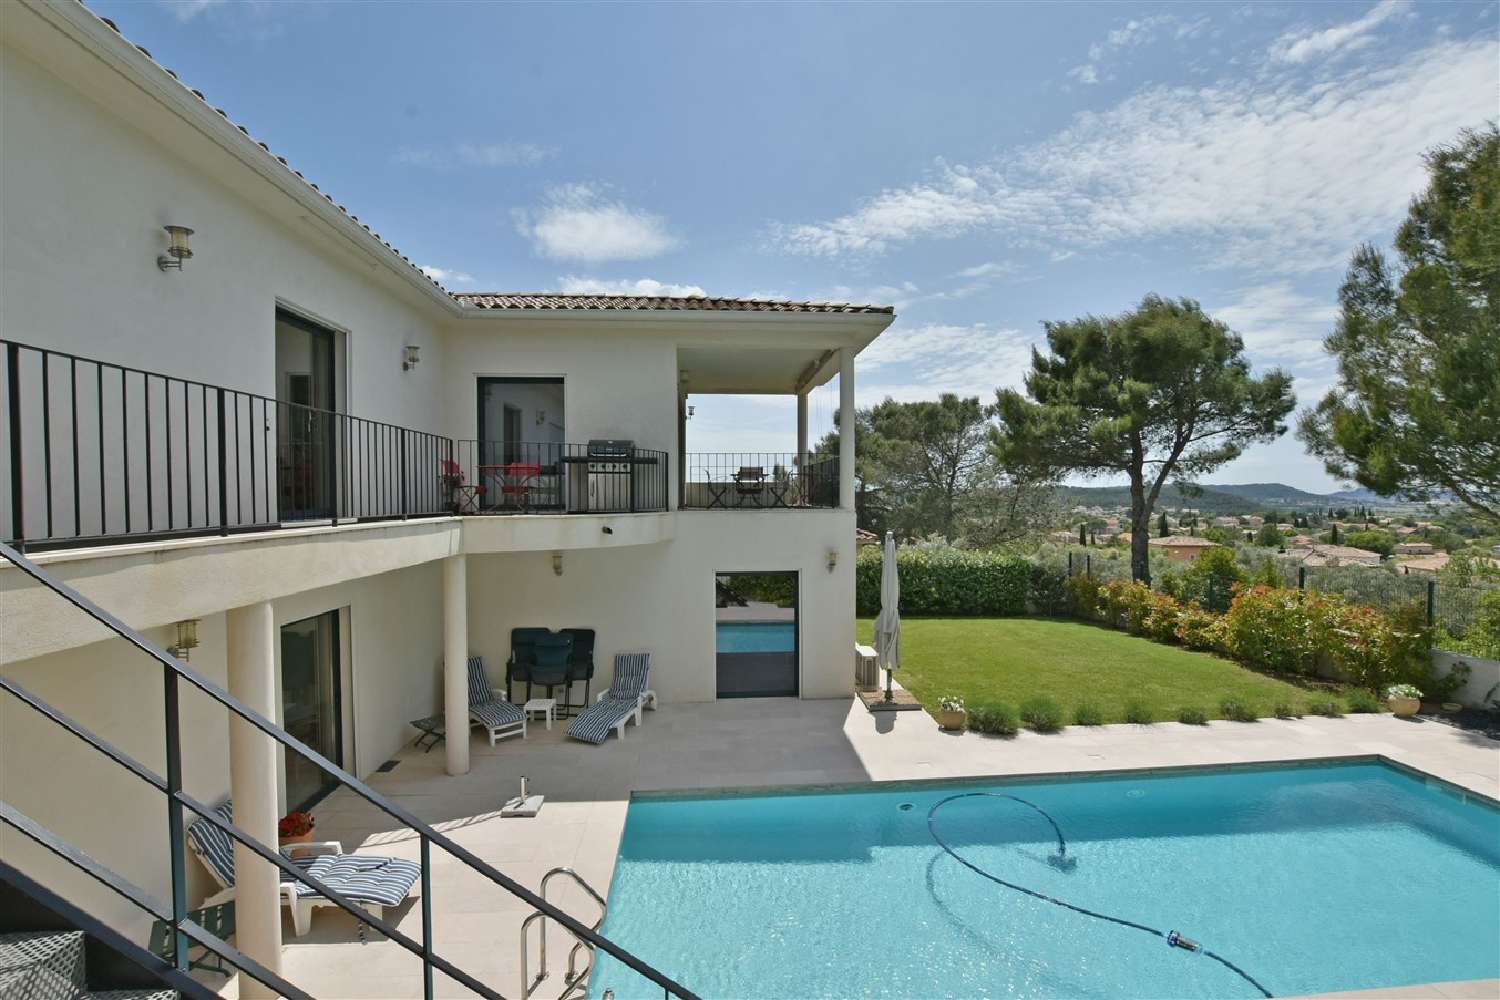  à vendre villa Caveirac Gard 2